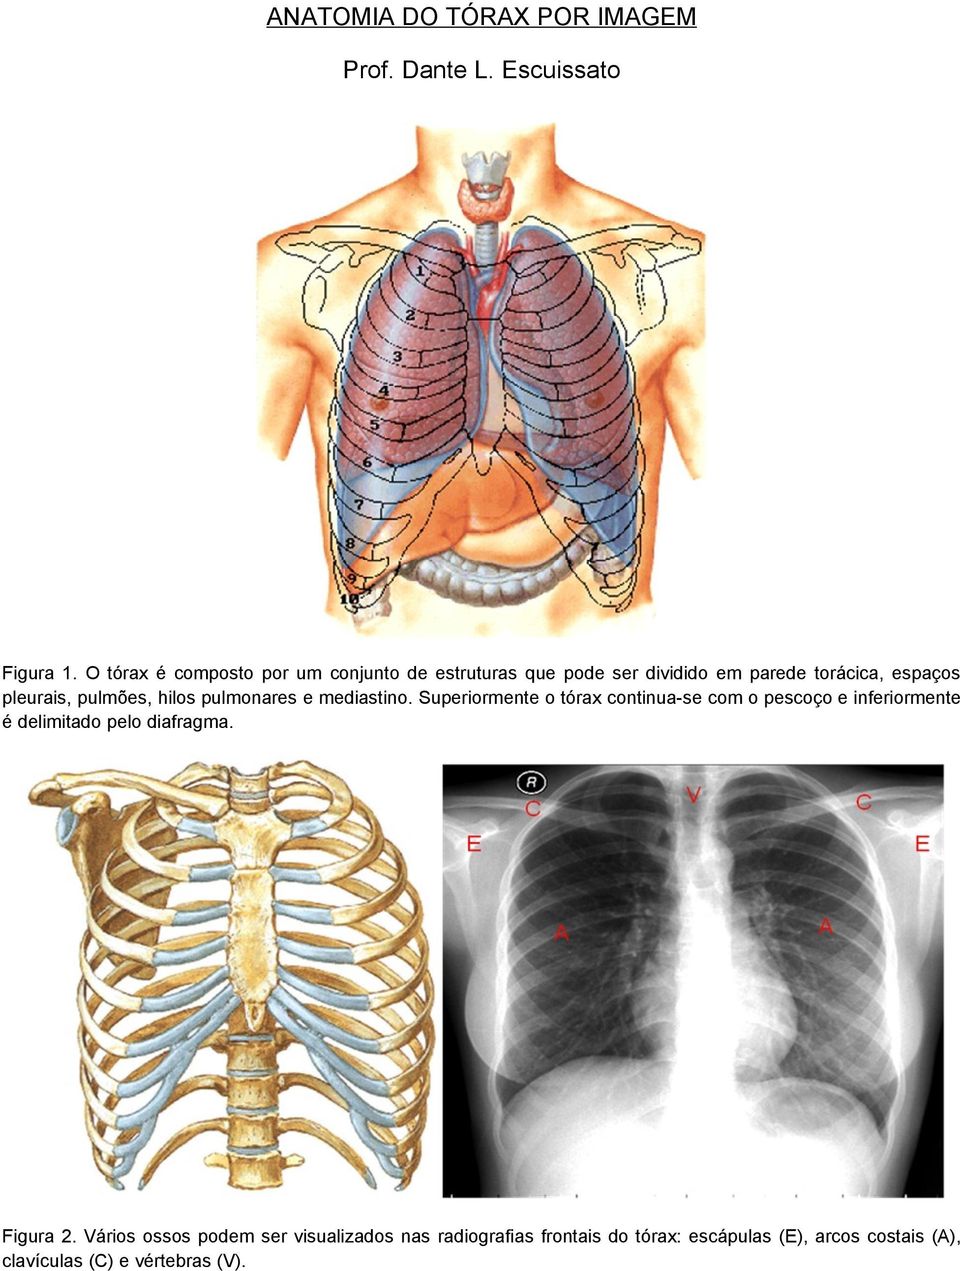 pulmões, hilos pulmonares e mediastino.